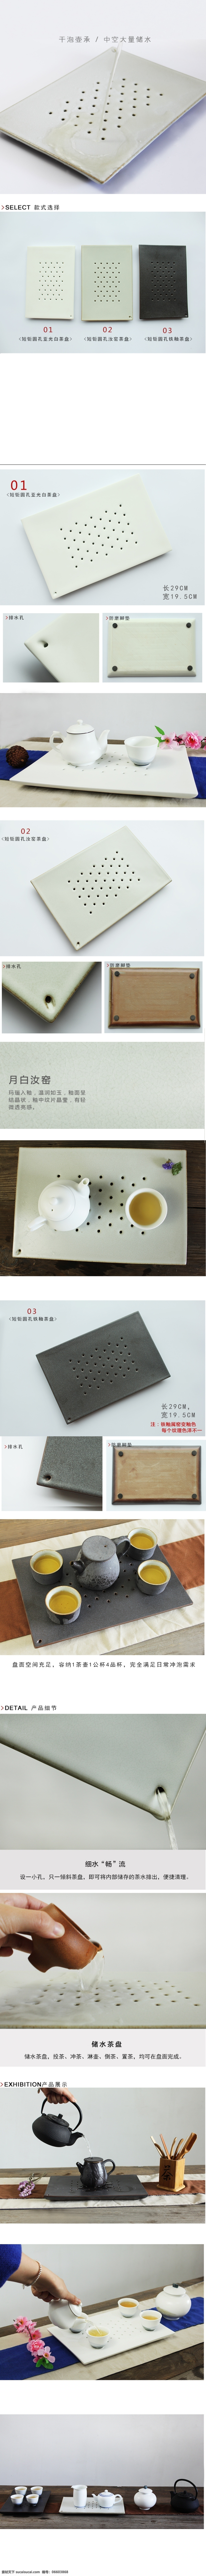 陶瓷 茶具 茶盘 详情 模板 白色